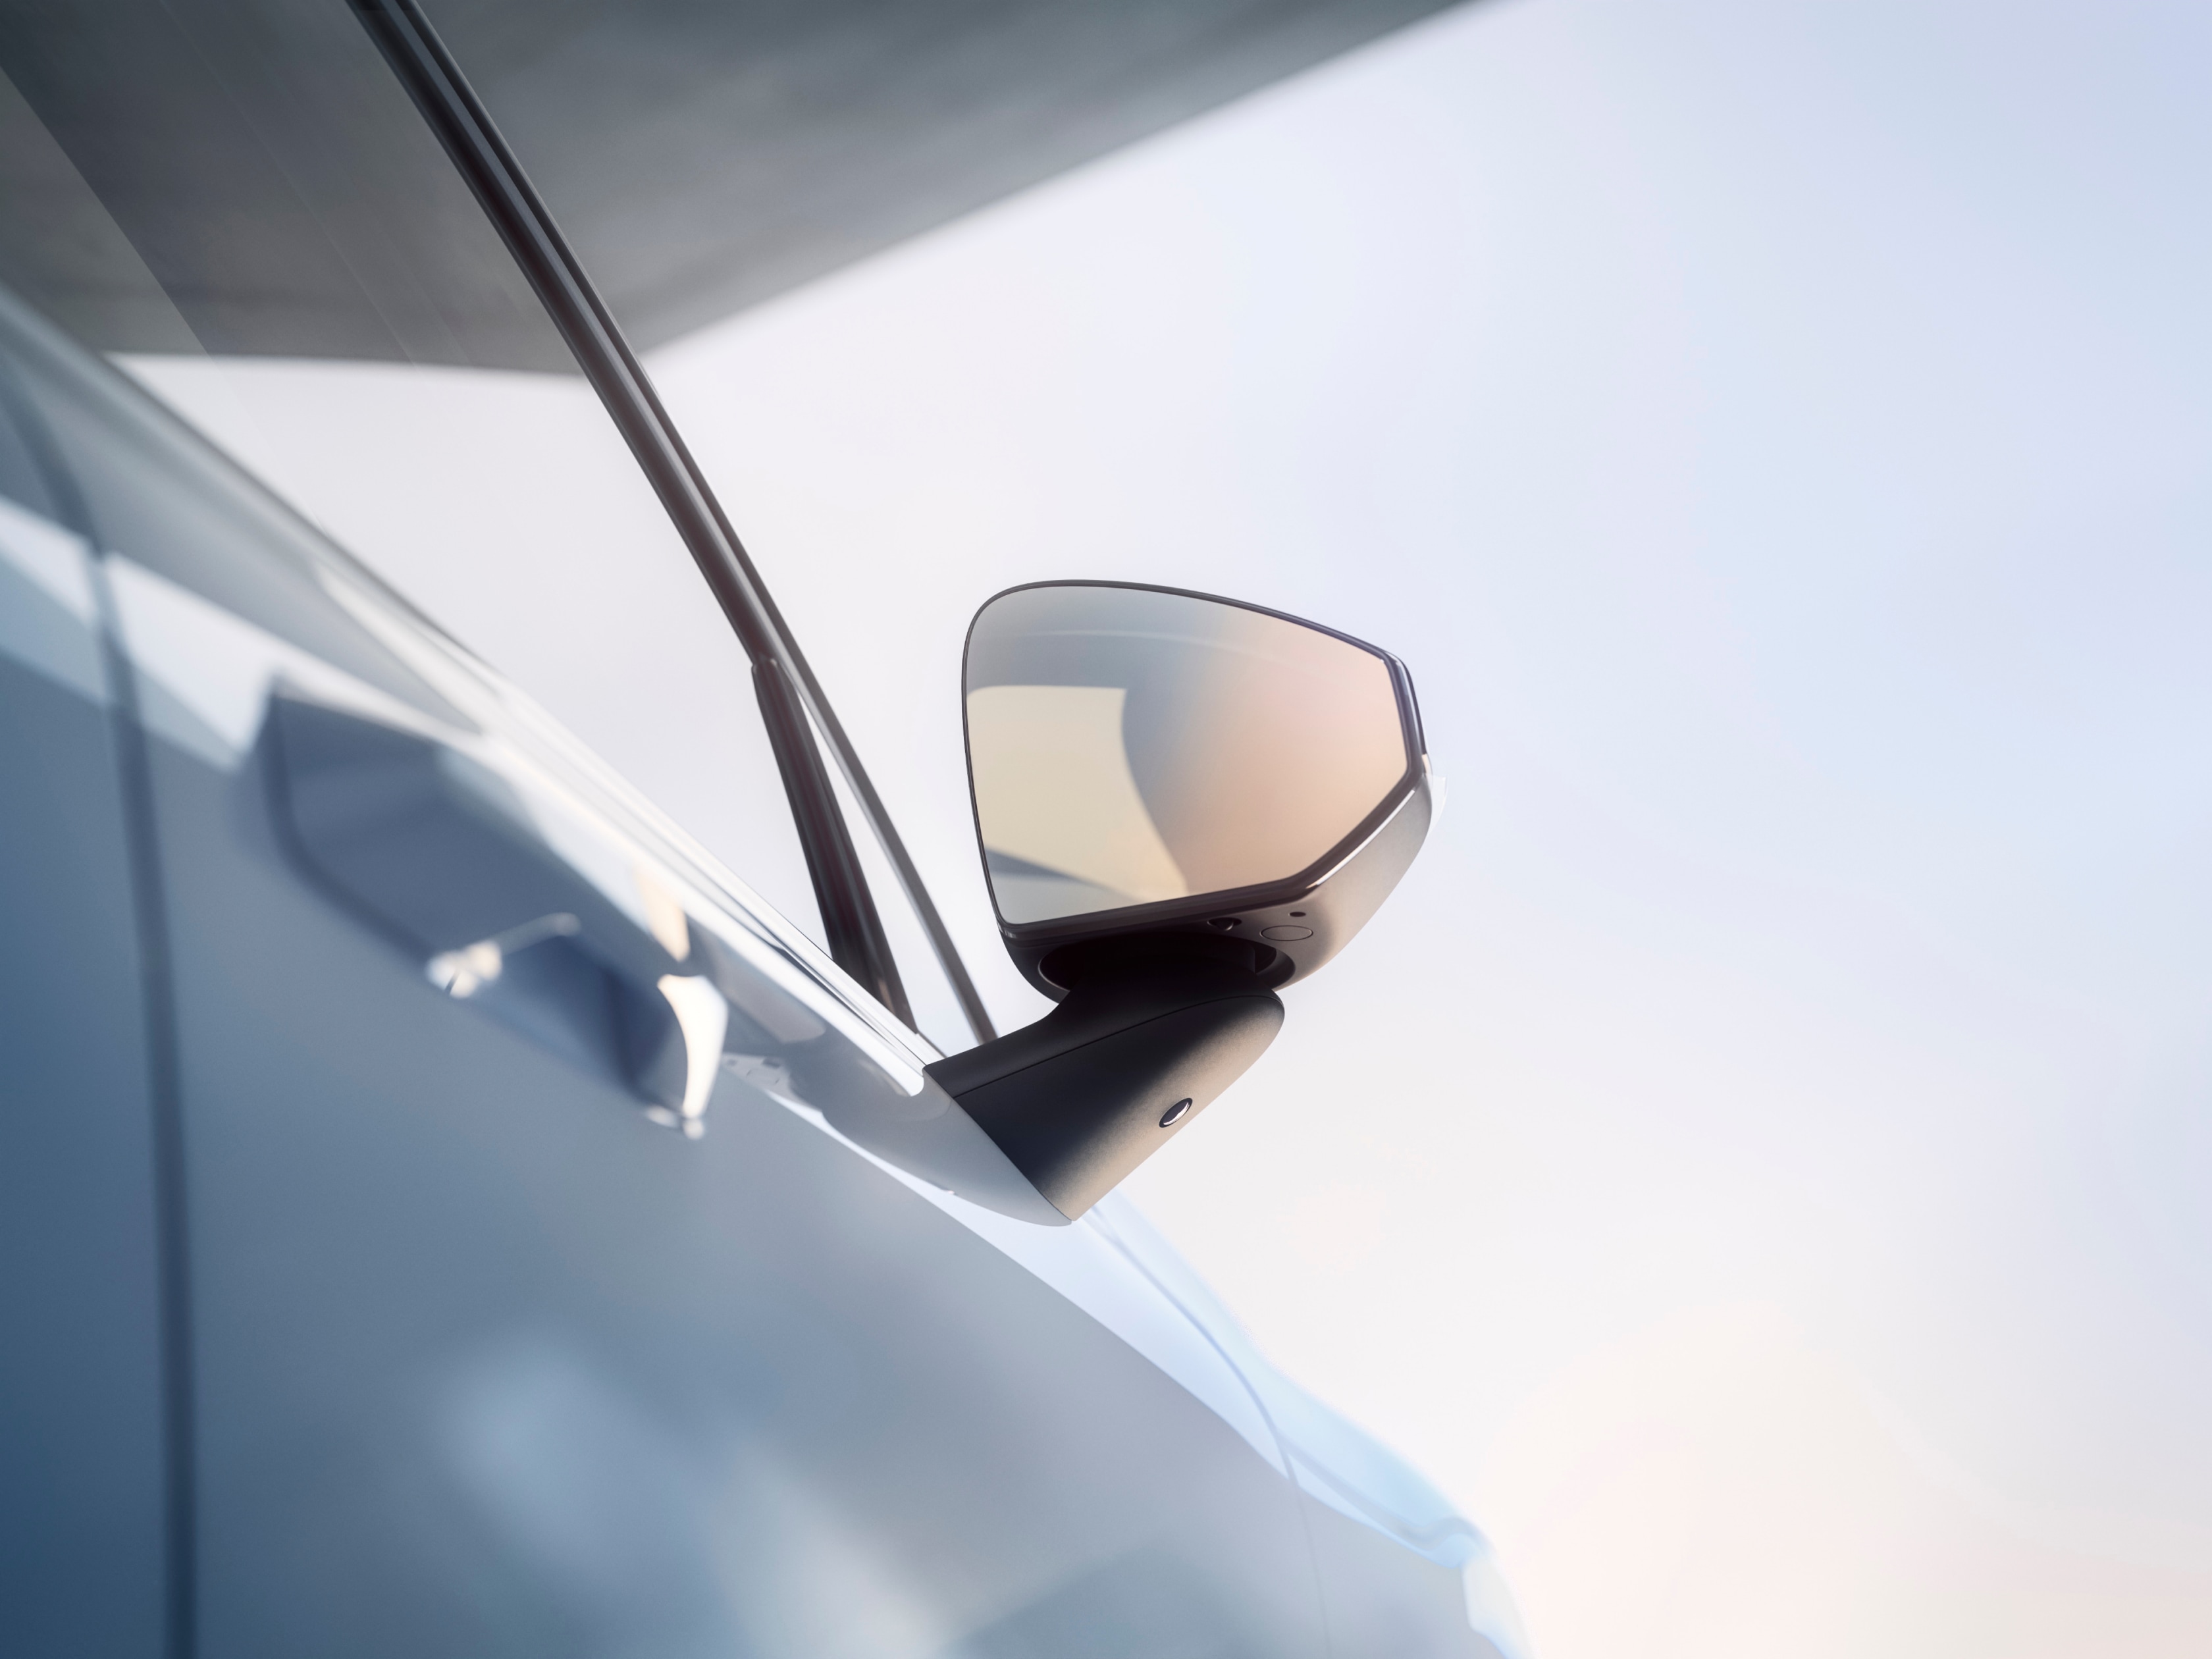 Vonkajšie zrkadlo bez rámčeka vozidla Volvo EX30 na strane spolujazdca lesknúce sa v jasnom slnečnom svetle.